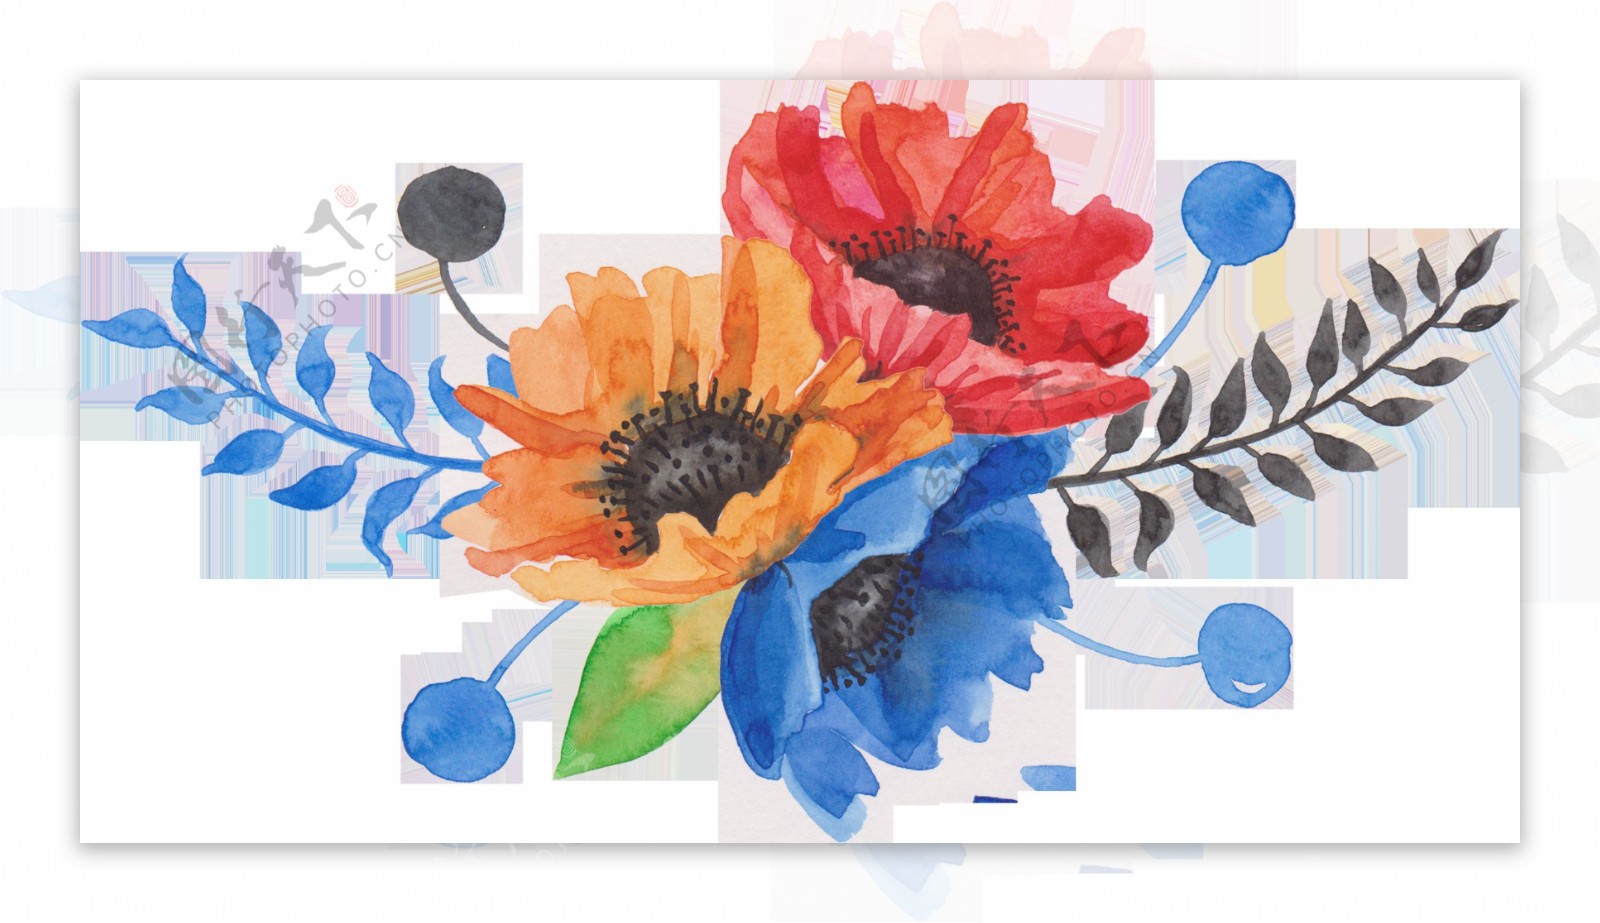 三原色花朵卡通透明装饰素材